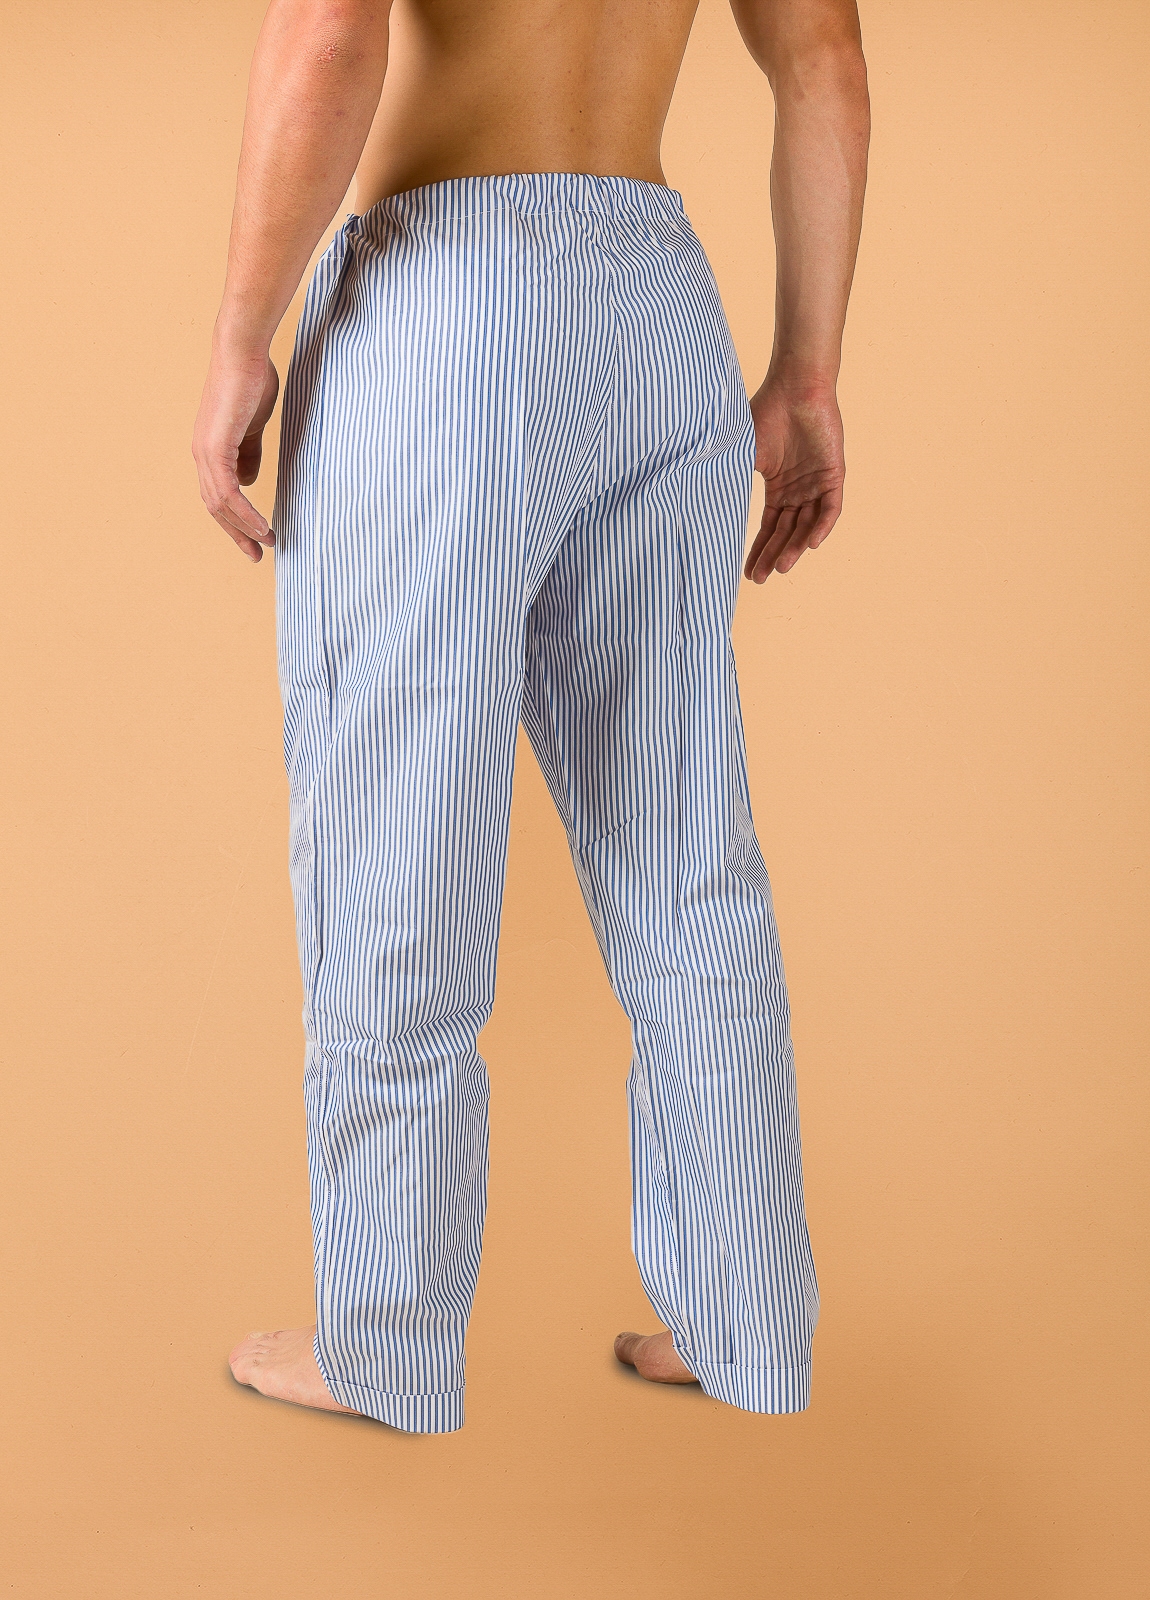 Pantalón largo de Pijama FUREST COLECCIÓN rayas azul con funda incluida - Ítem2